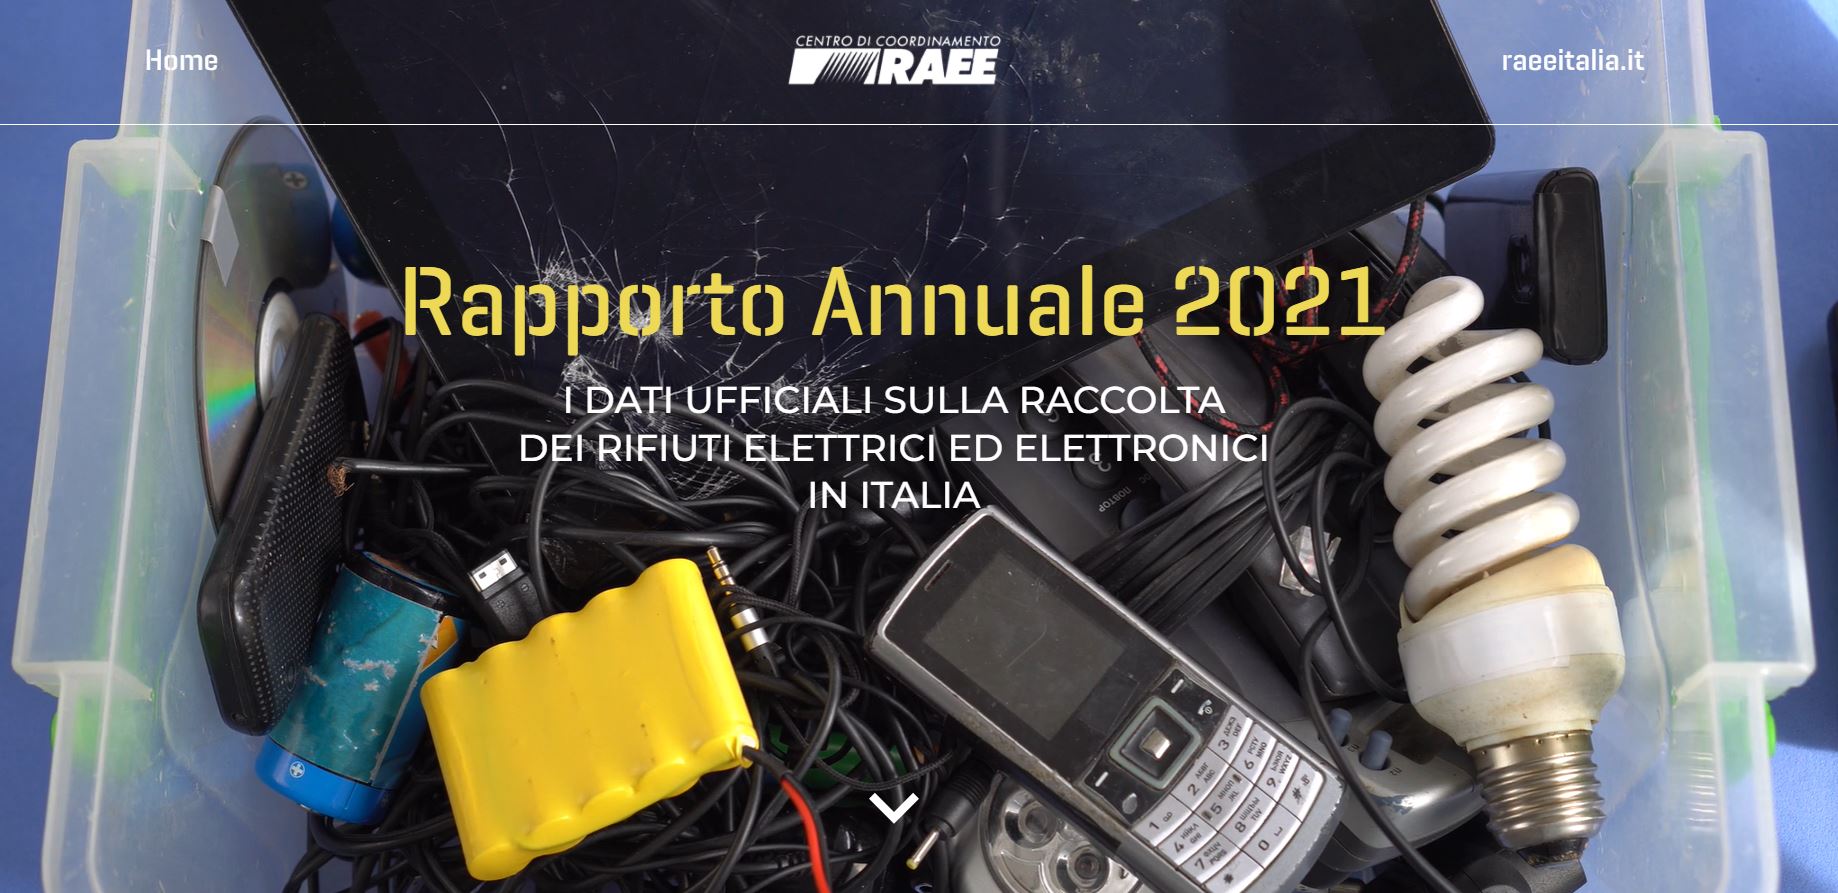 Rapporto-annuale-2021-CDCRAEE